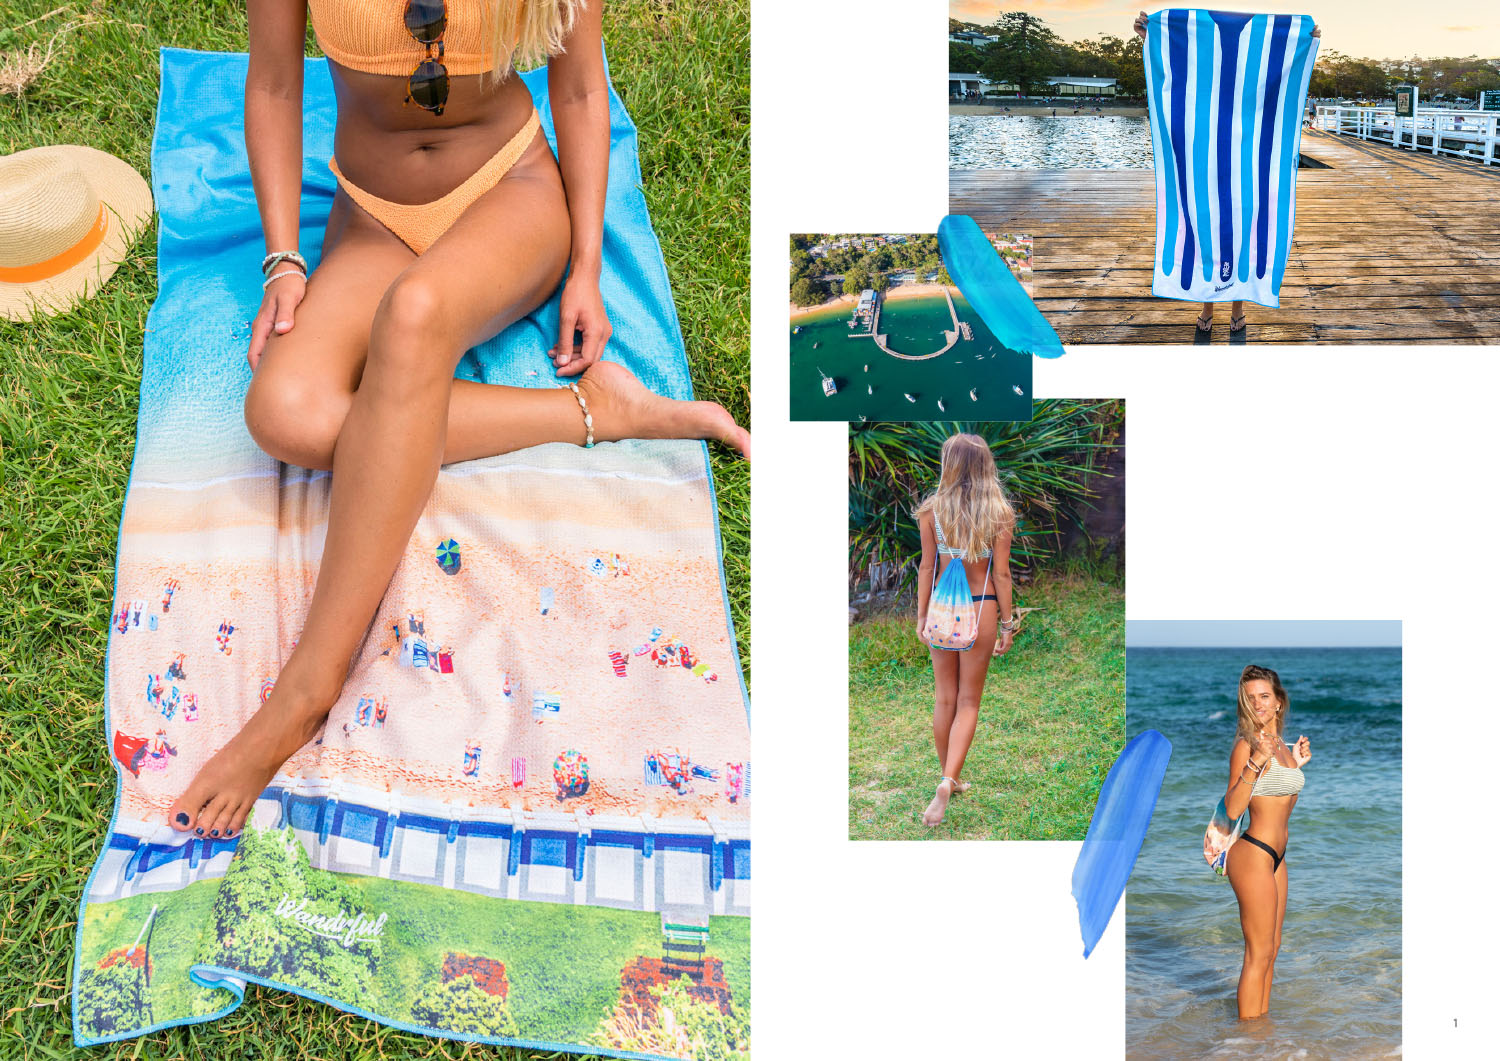 Wandrful sand-free beach towels at Balmoral Beach. Model using sand-free beach towel.